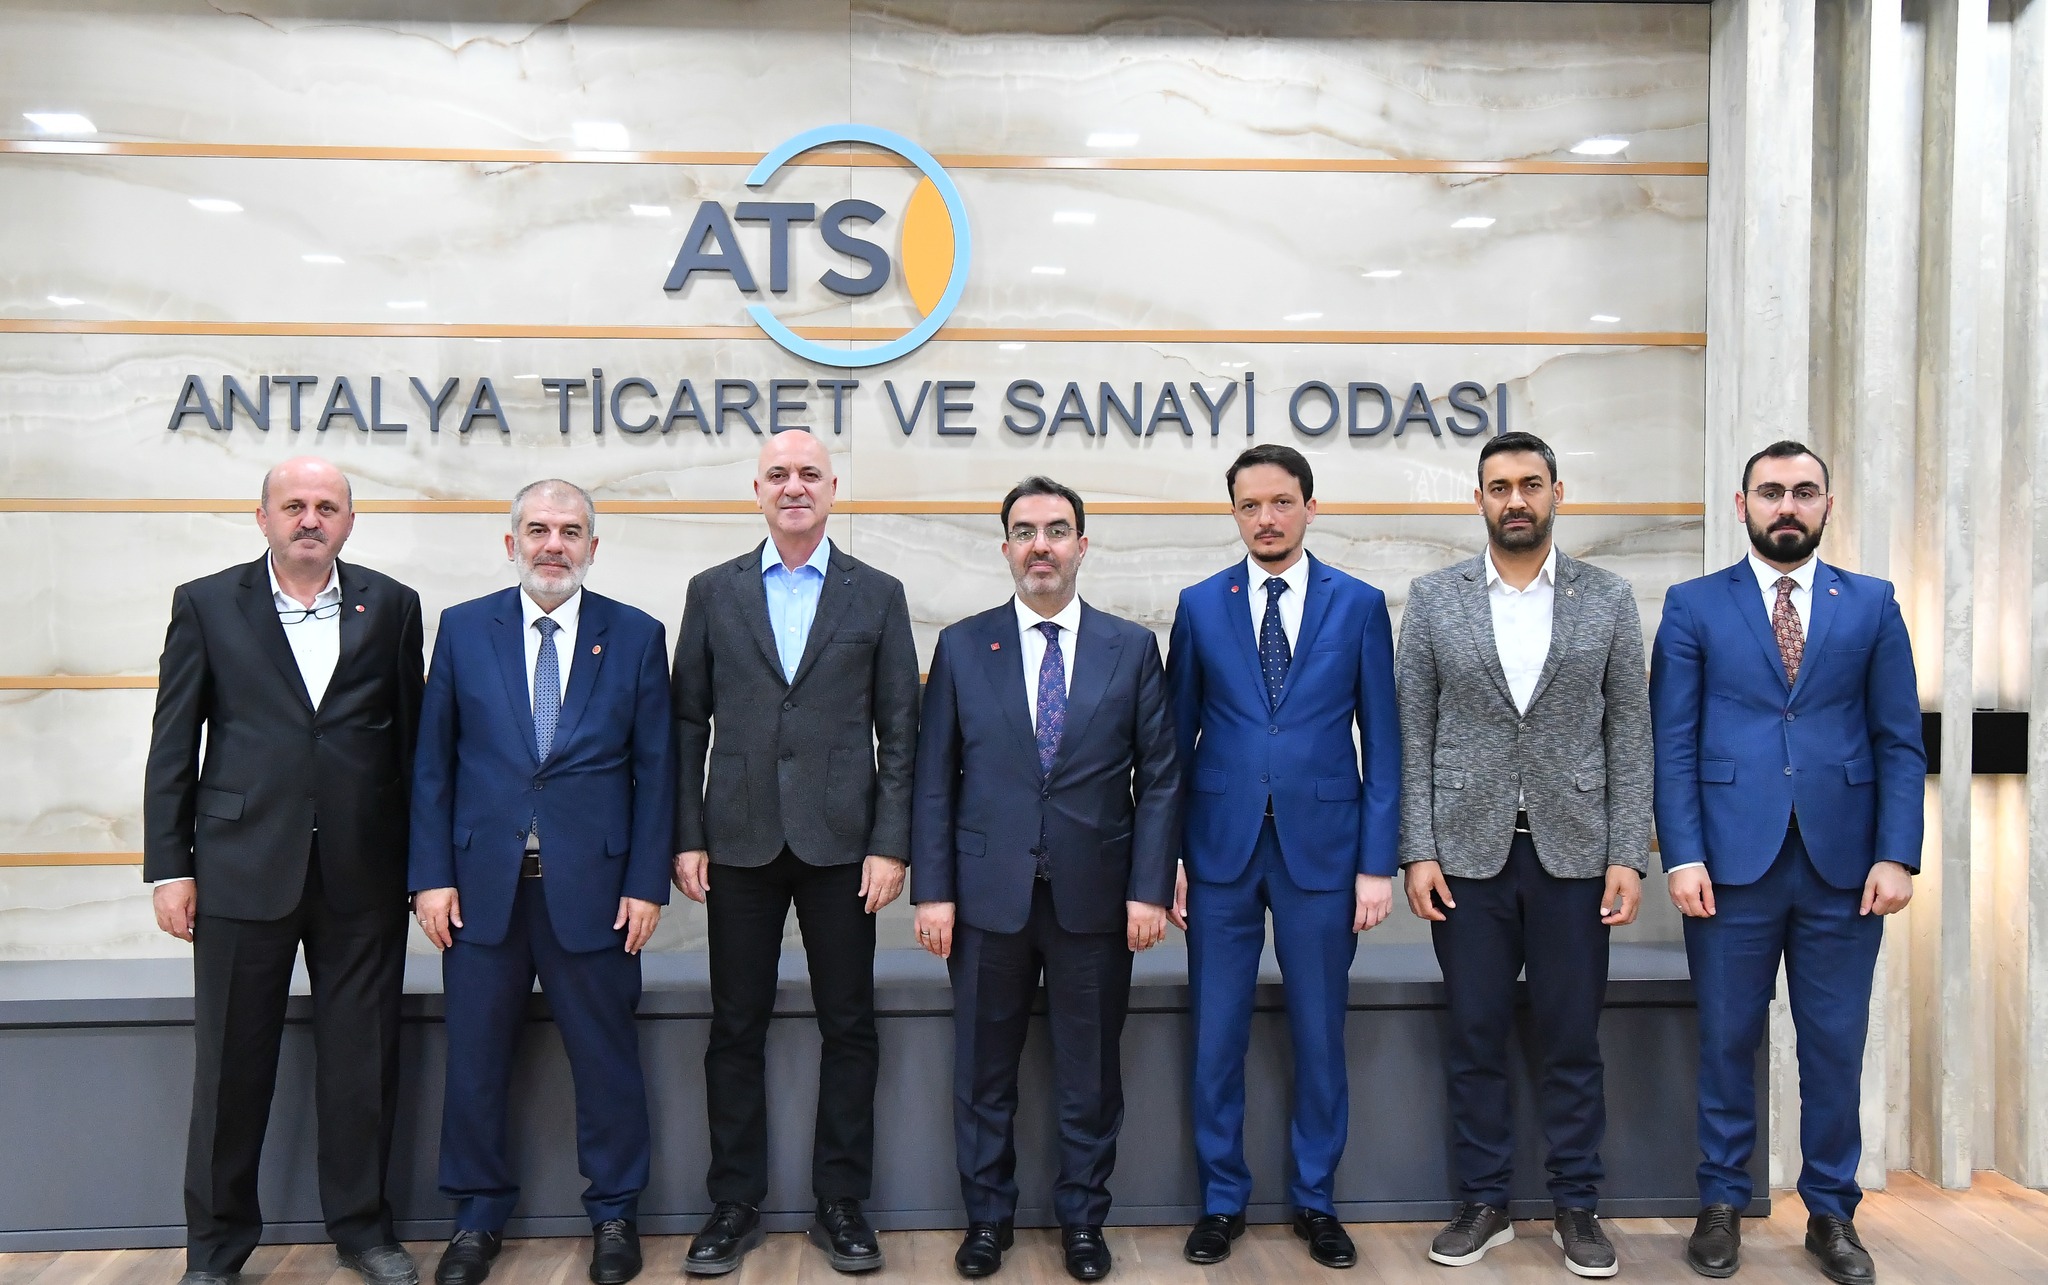 Antalya Ticaret ve Sanayi Odası, Antalya'nın ekonomik ve kültürel gelişimi için projeleri değerlendirdi.